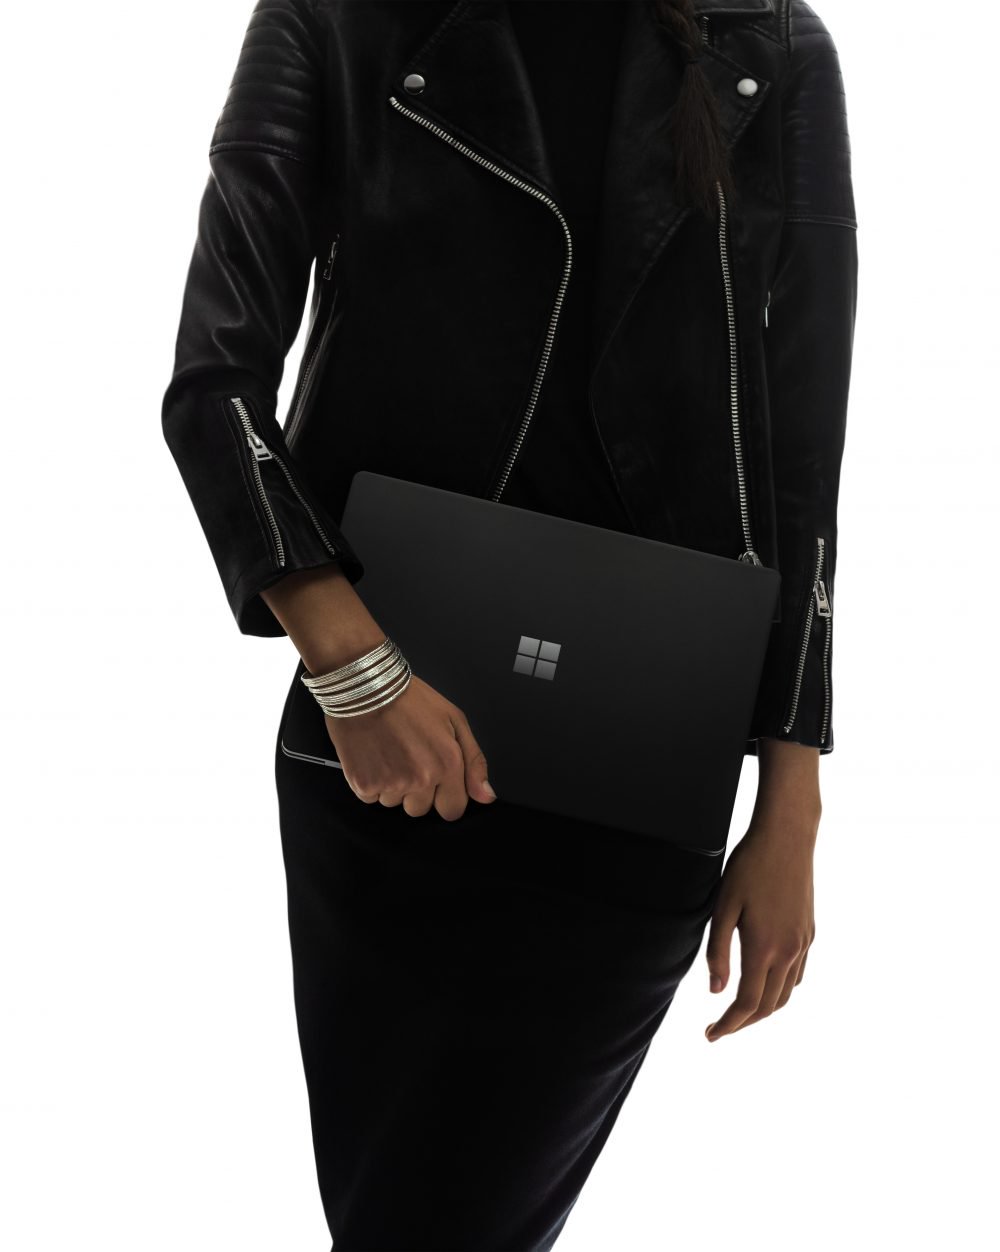 請你自便！ Microsoft Surface Laptop 2 現在可享受 300 美元的優惠